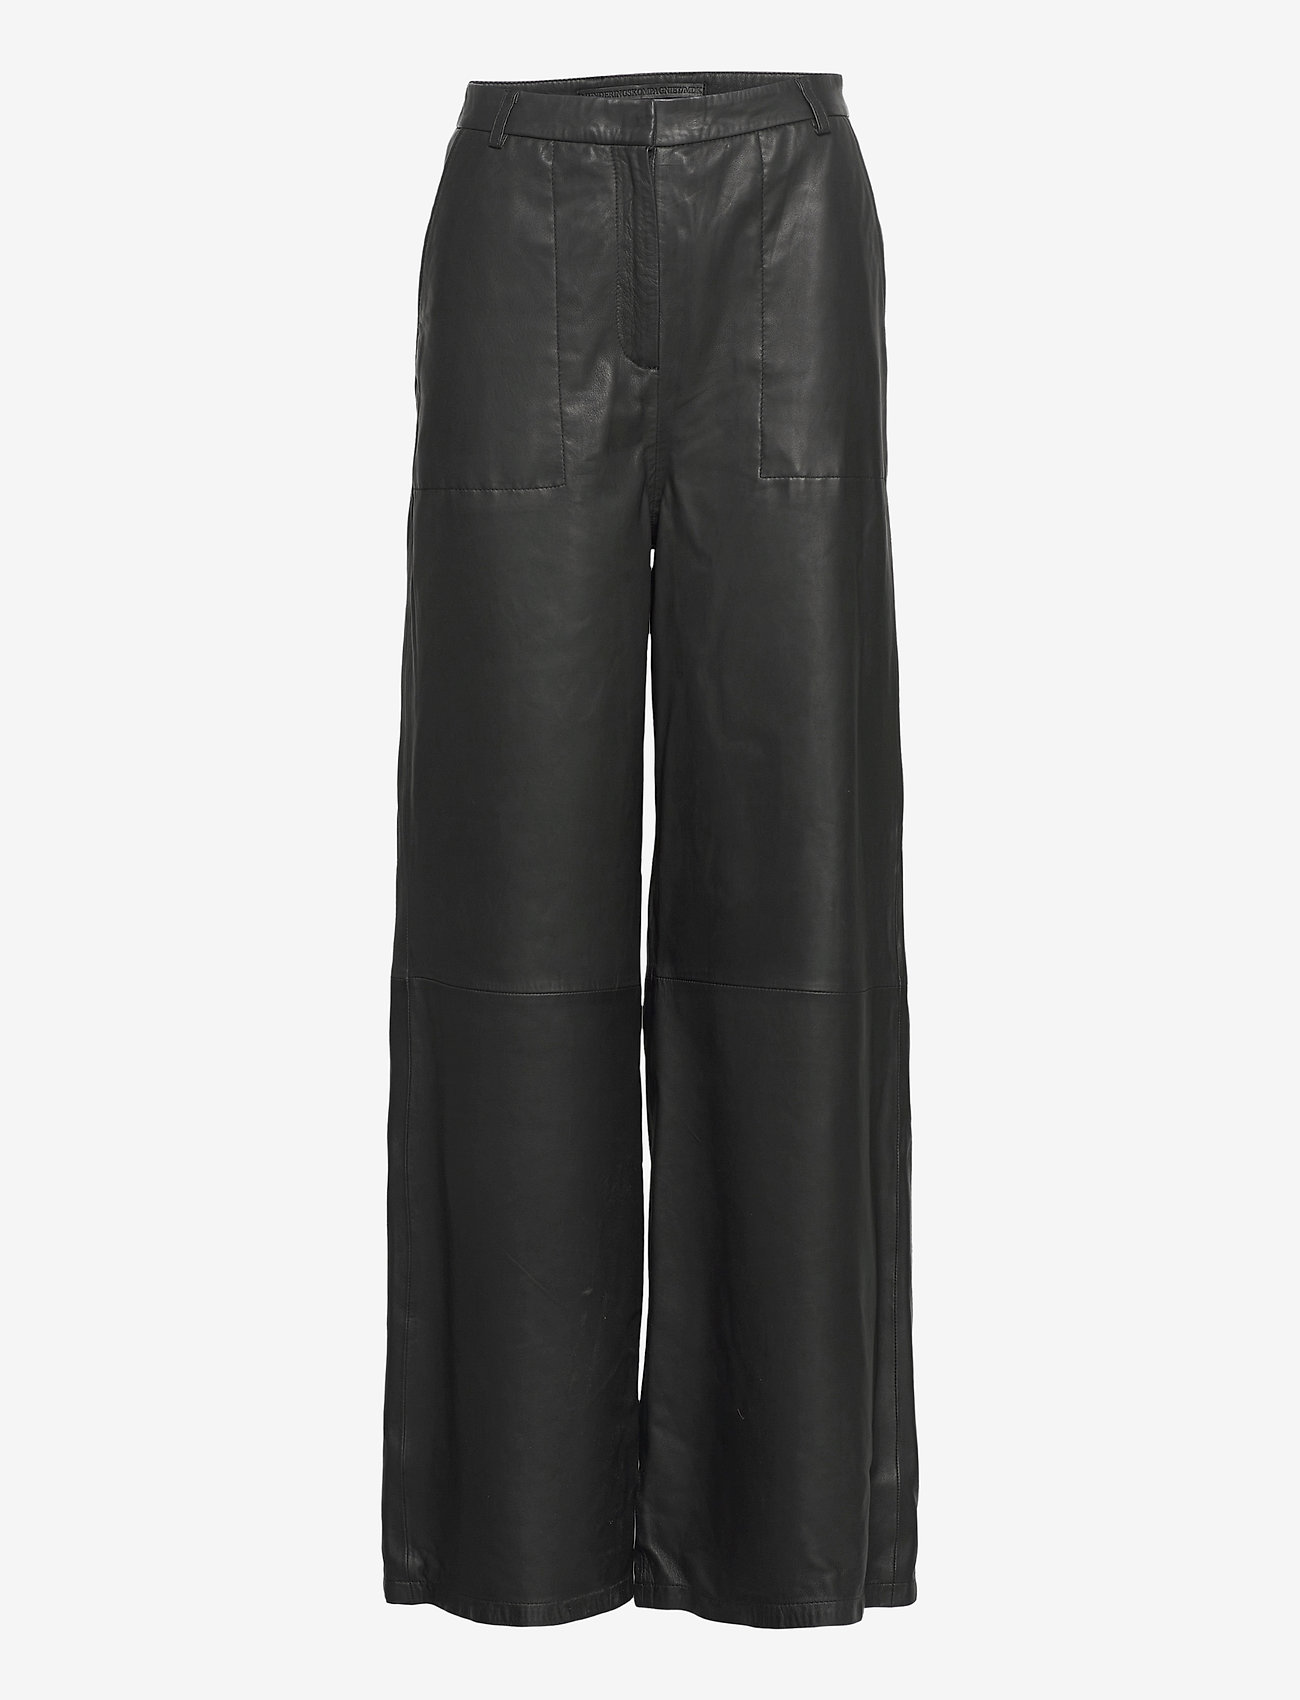 MDK / Munderingskompagniet - Isa leather pants - leather trousers - black - 0